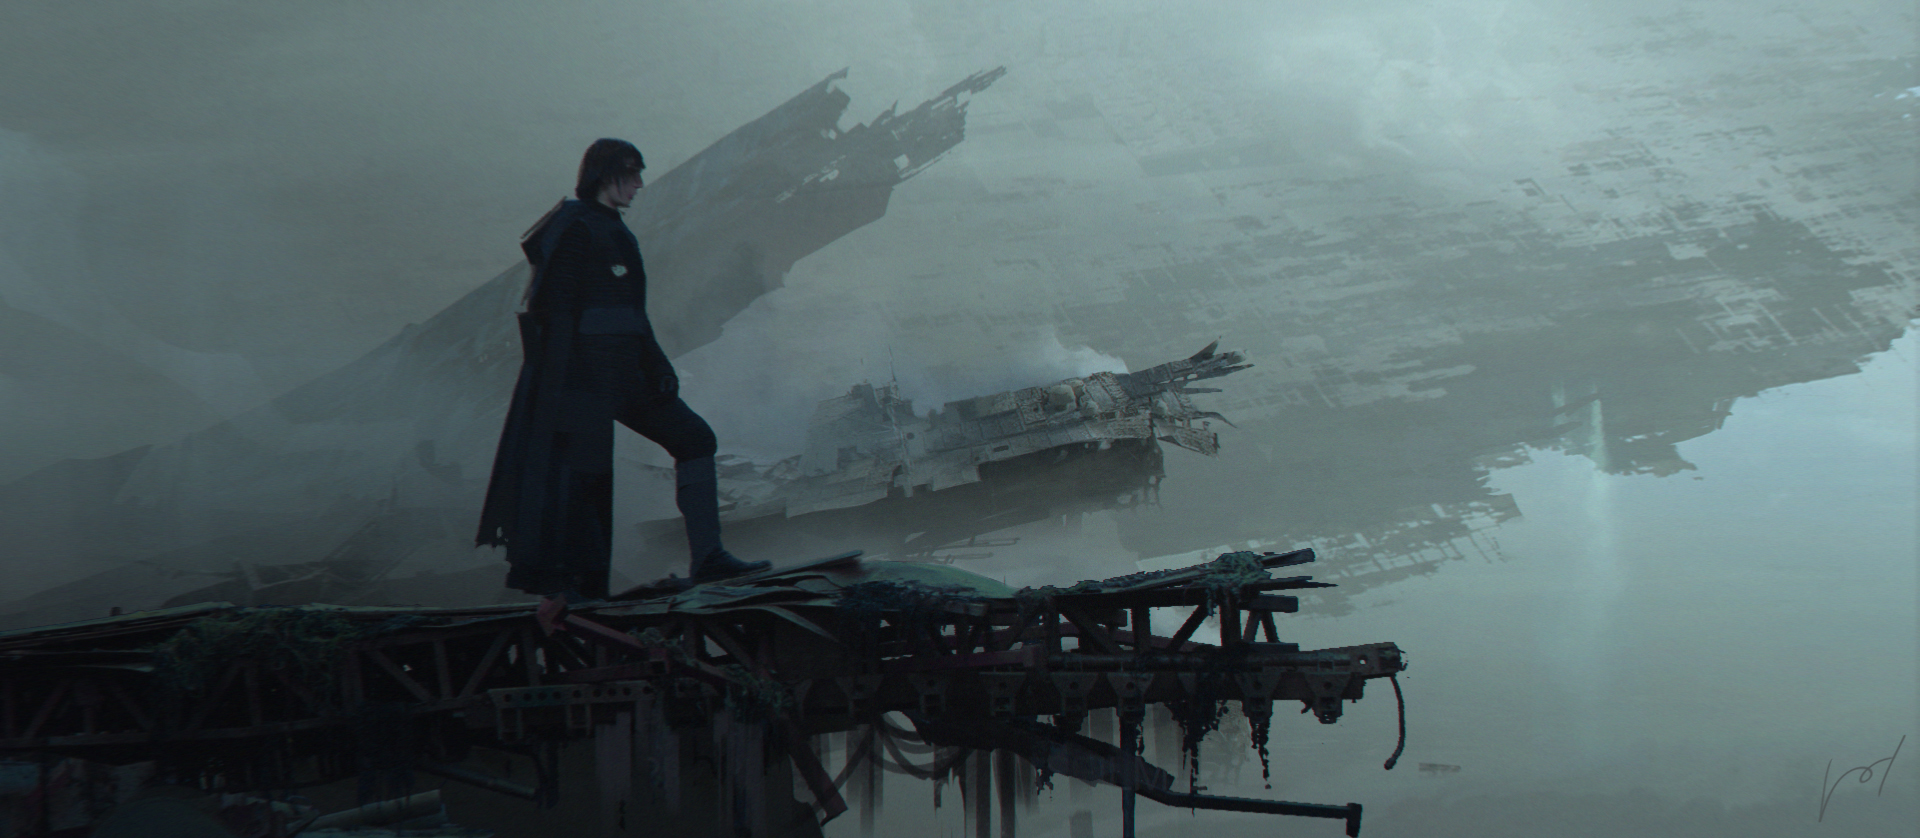 Star Wars Battlefront 2 Celebration Edition review – Rise of Skywalker